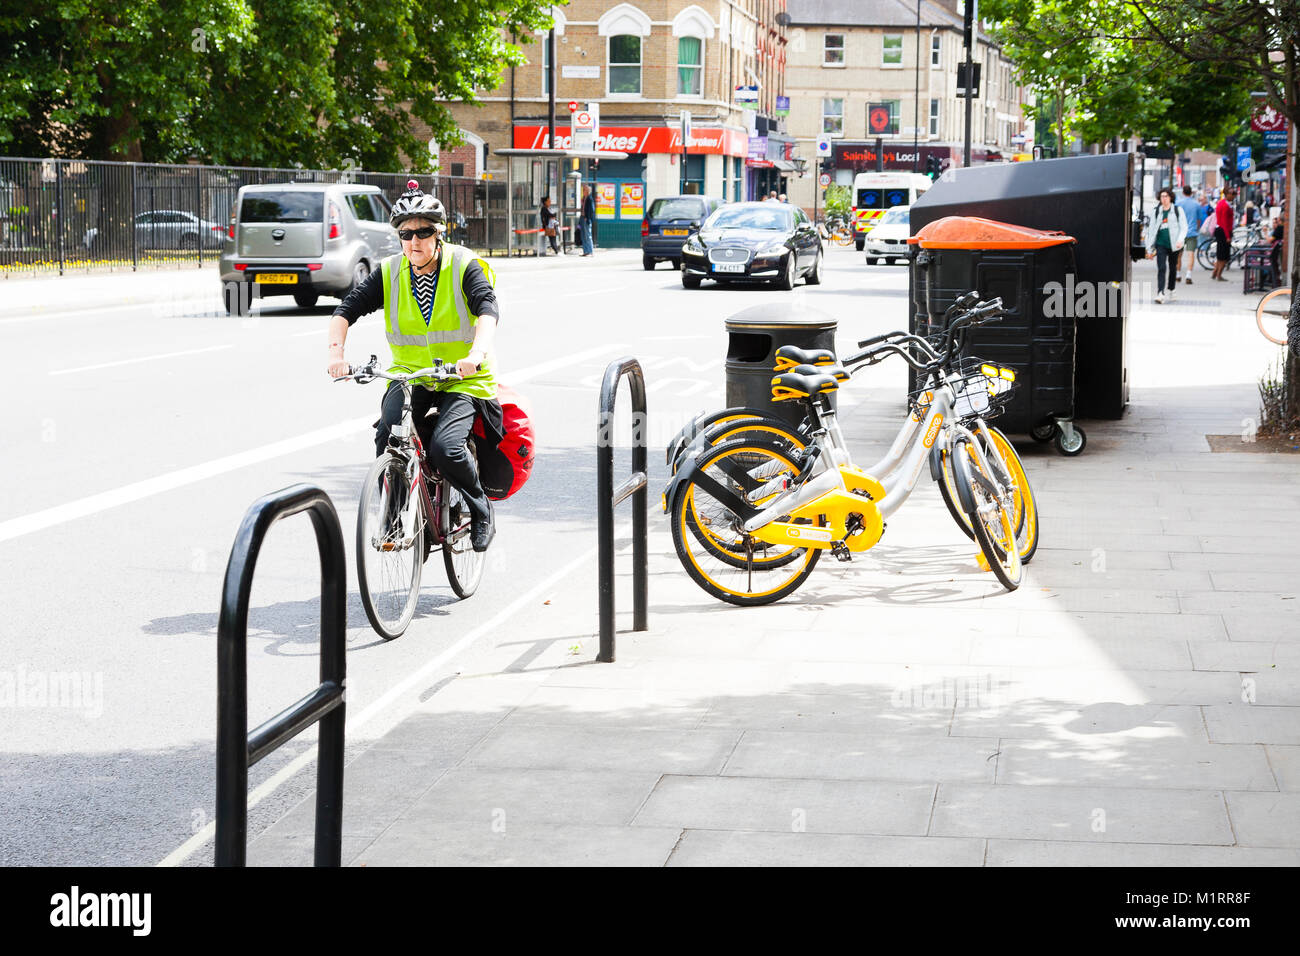 Londres, Angleterre. Un cycliste rides passé un trio de Obikes non utilisés à Fulham après le service de lancement. Banque D'Images